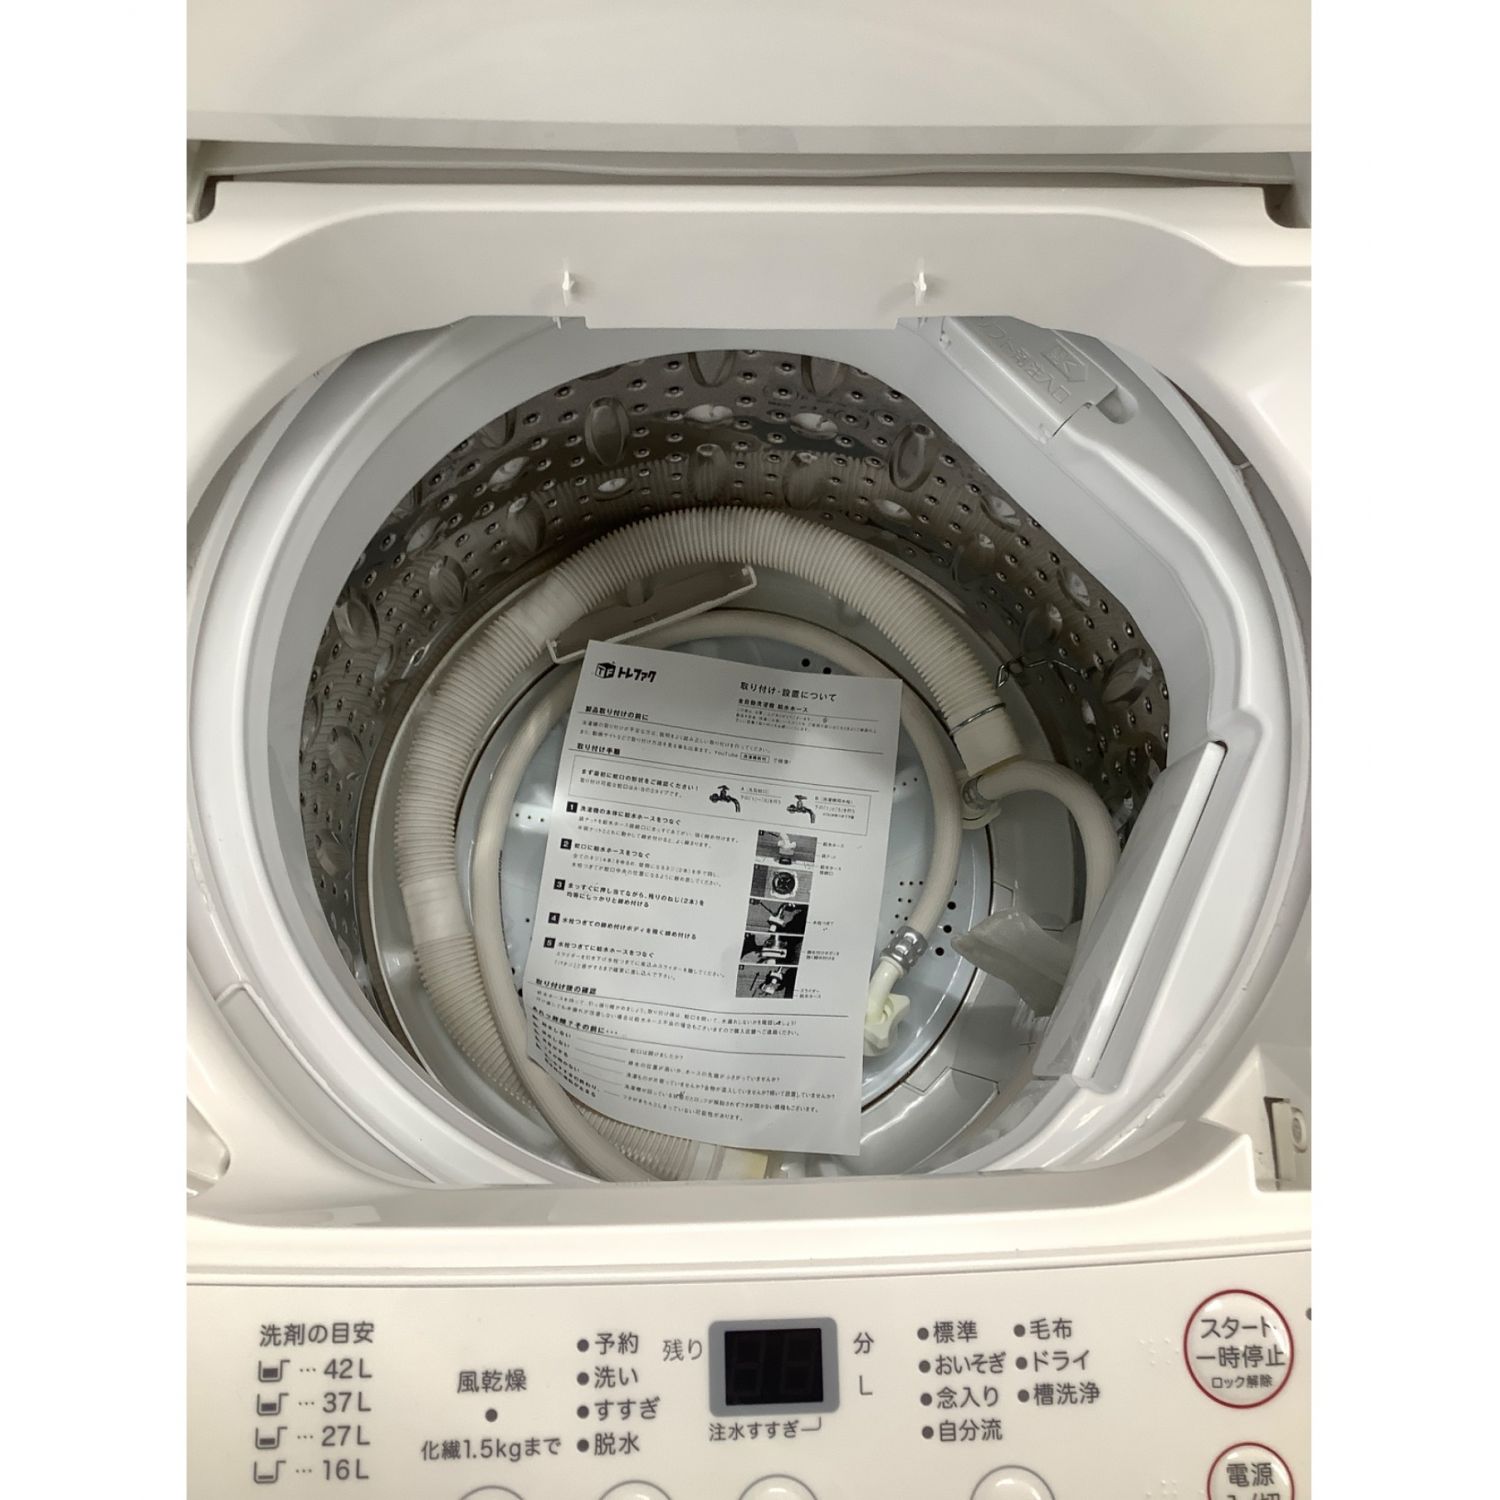 無印良品 (ムジルシリョウヒン) 4.5㎏ 全自動洗濯機 4.5kg AQW-MJ45